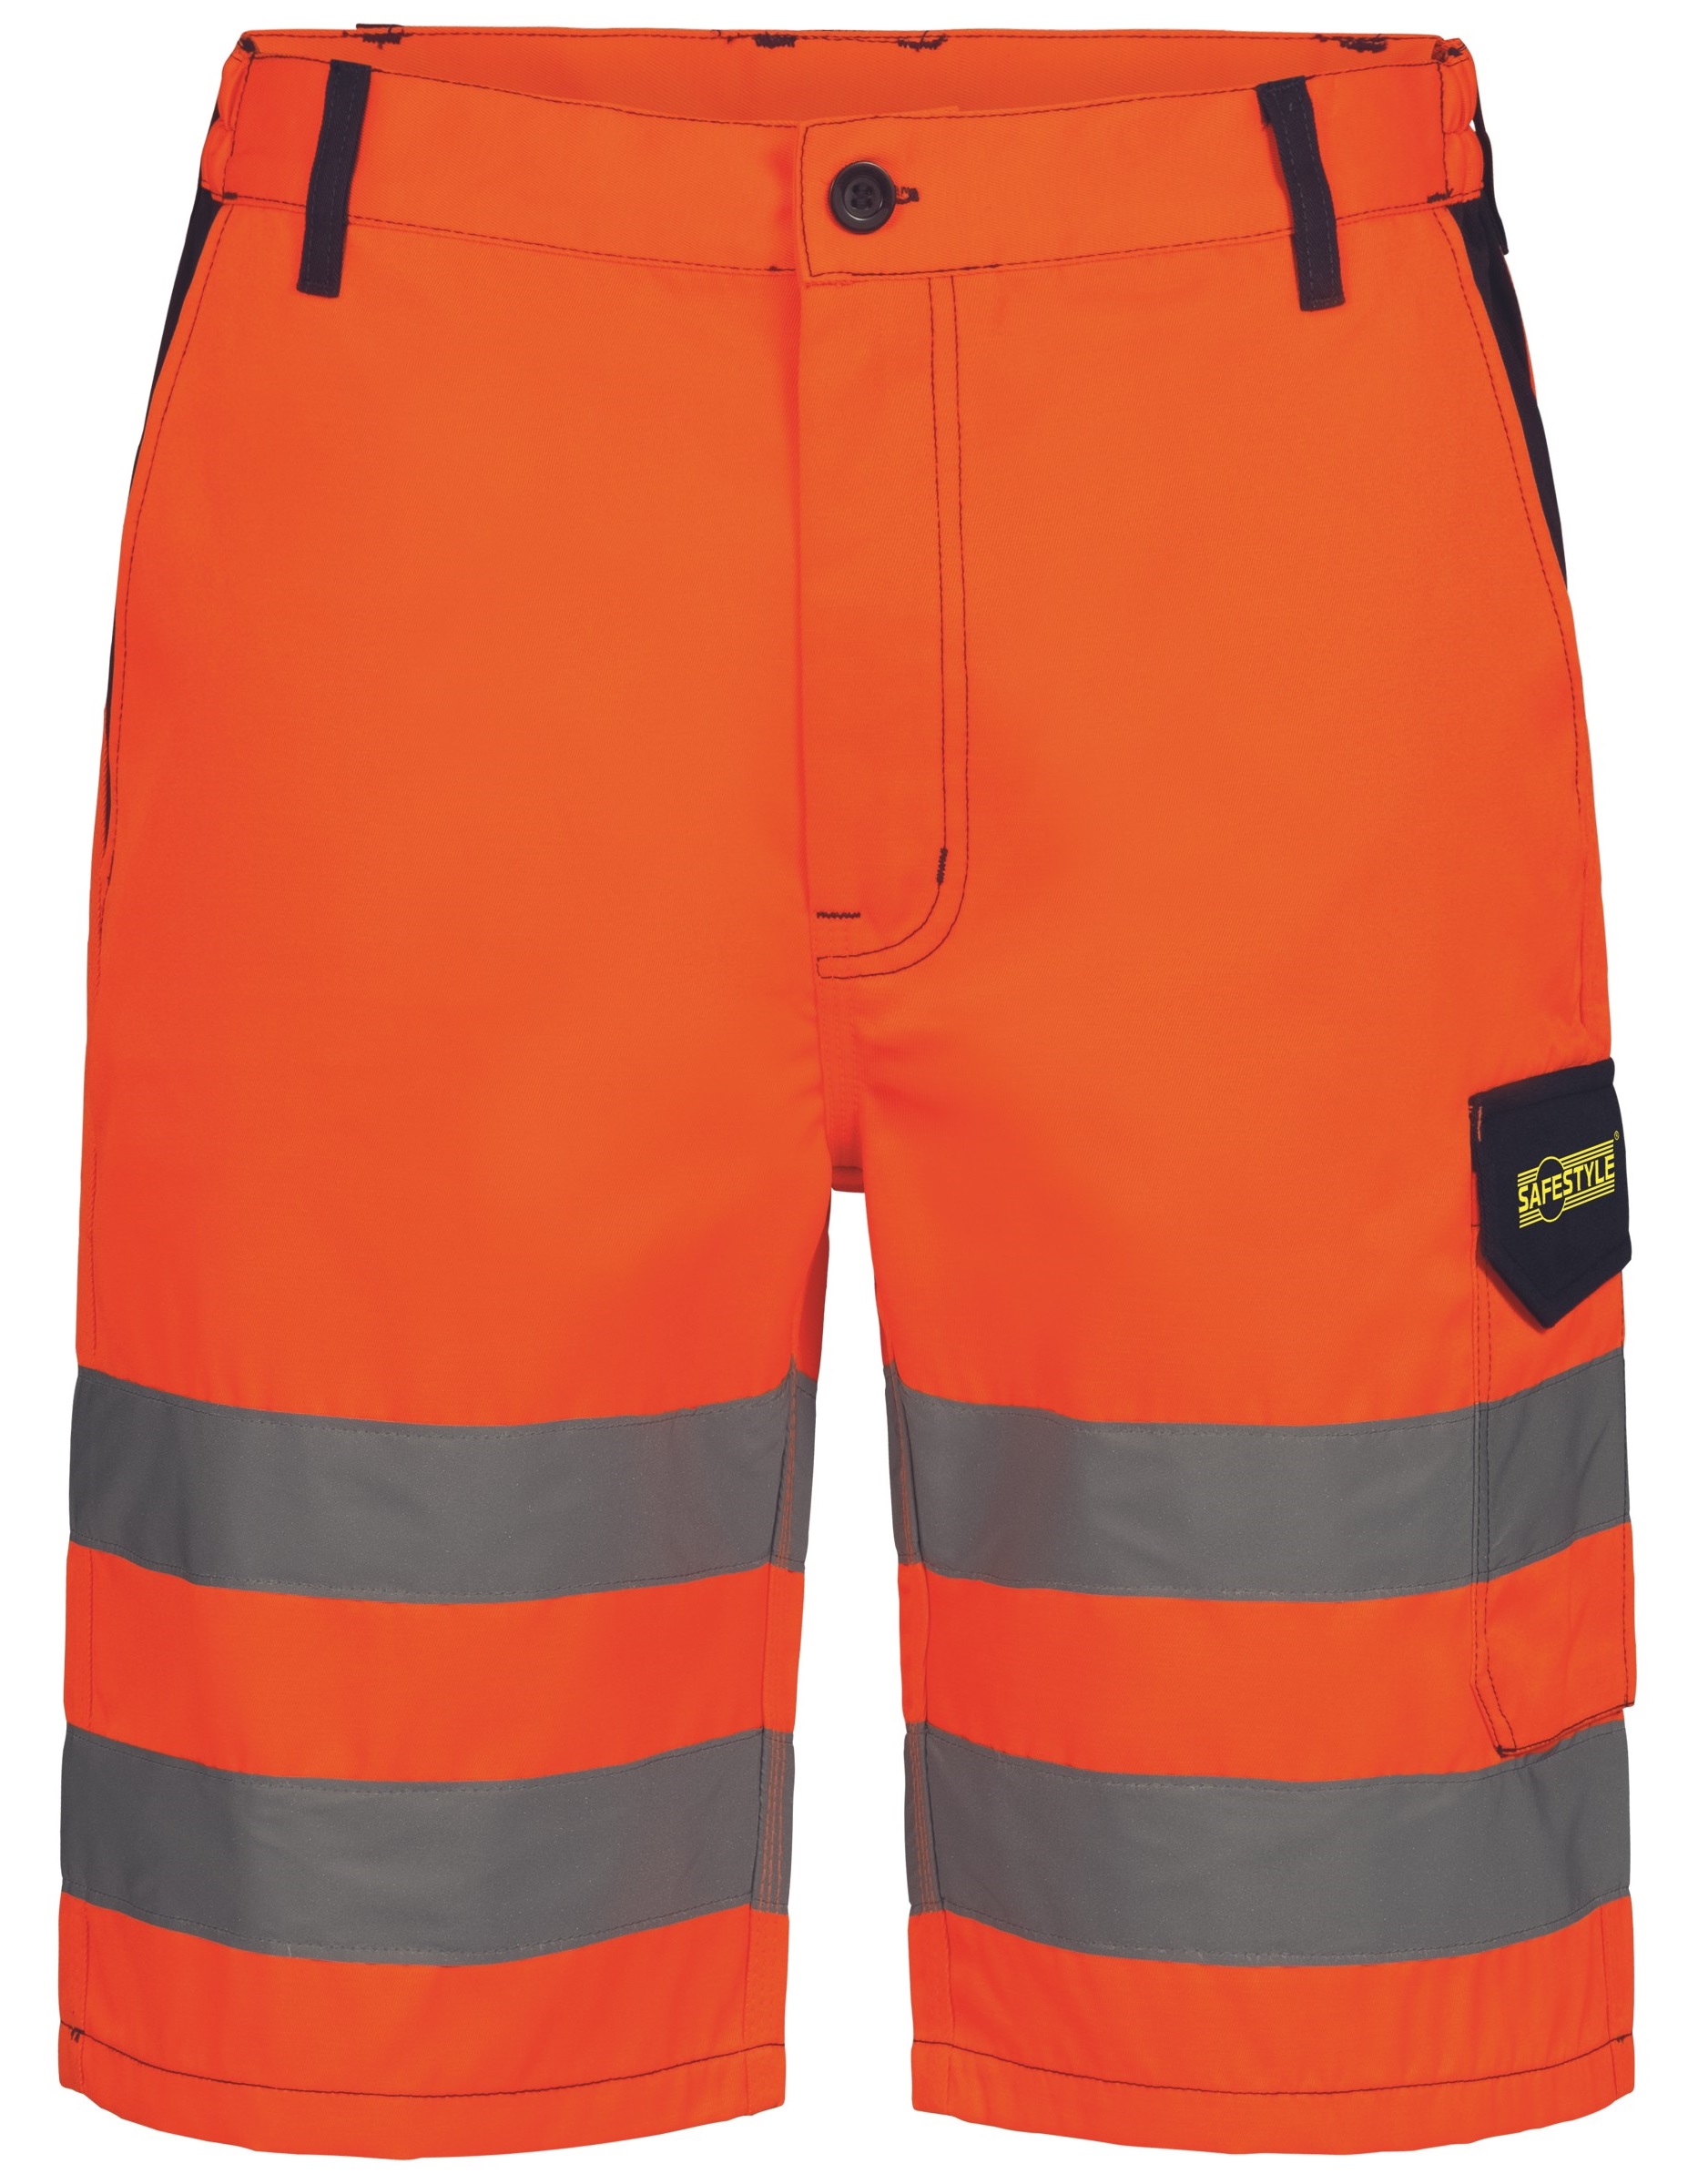 F-Warnschutz-Shorts, *WALSRODE*, orange/marine